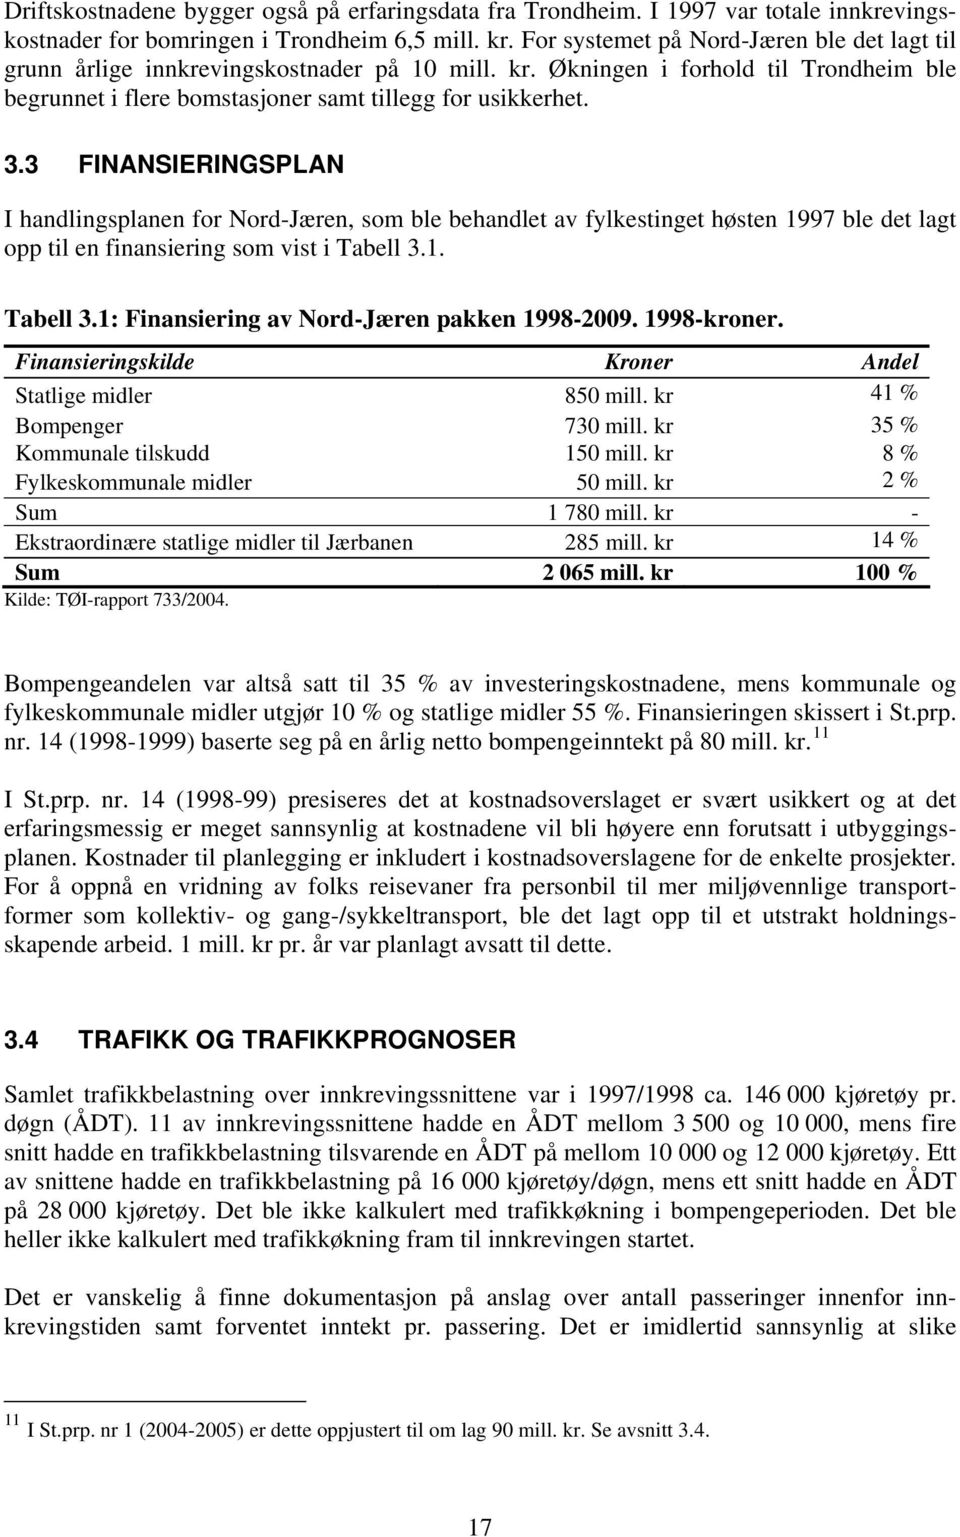 3 FINANSIERINGSPLAN I handlingsplanen for Nord-Jæren, som ble behandlet av fylkestinget høsten 1997 ble det lagt opp til en finansiering som vist i Tabell 3.